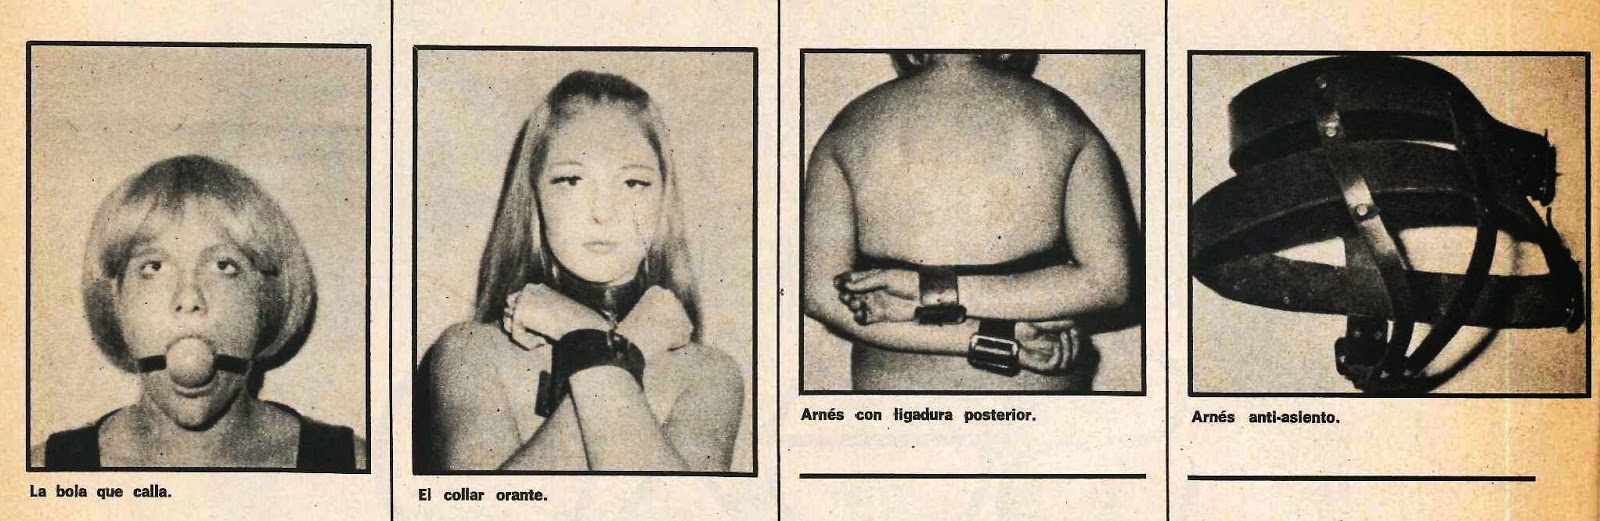 catalogo de aticulos bdsm vintage 1972